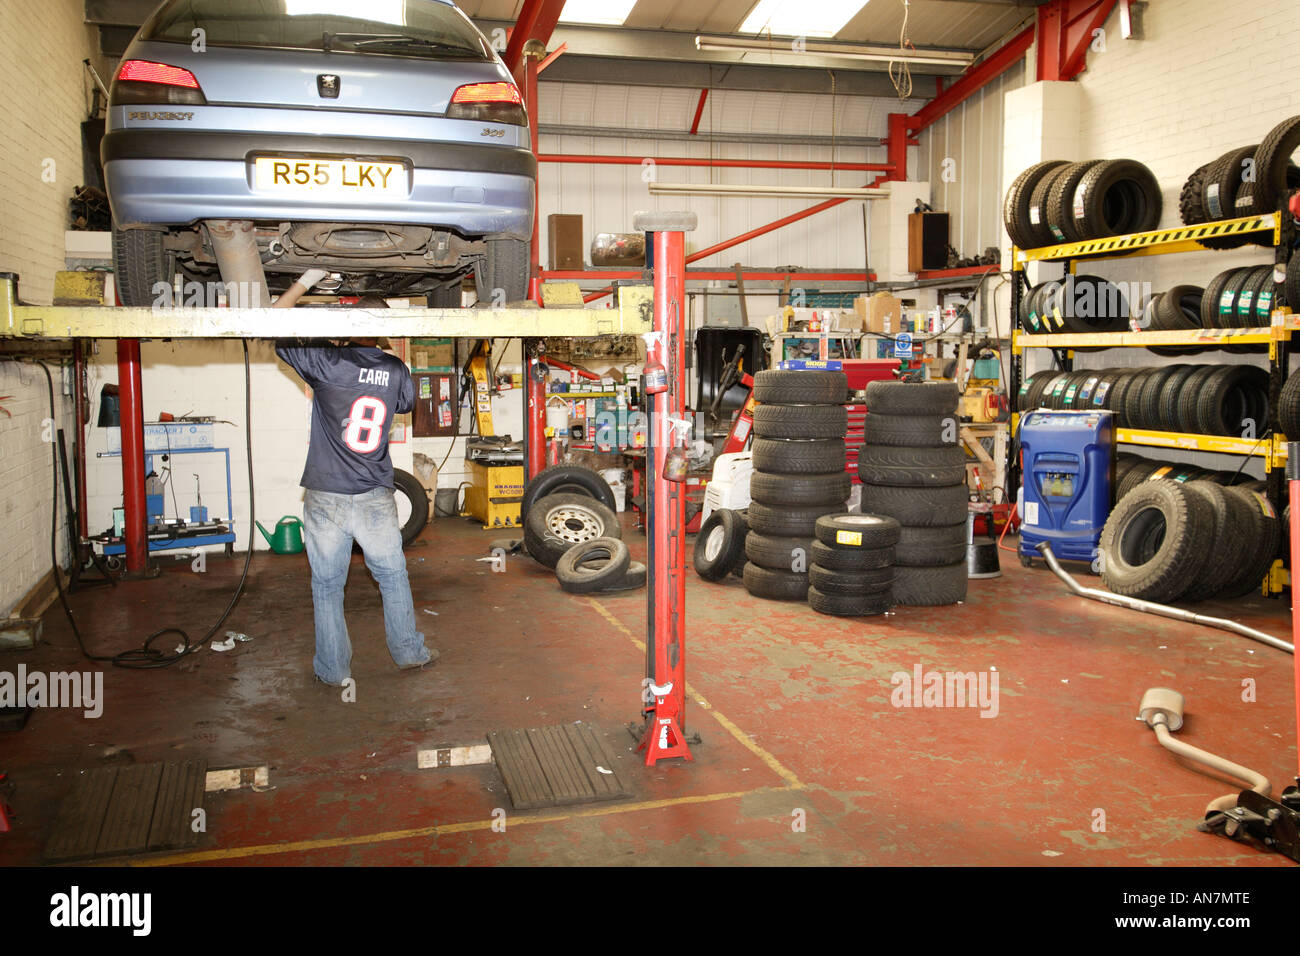 Bergfahrt auf Hebebühne in einer Garage Mechaniker arbeiten unter Fahrzeug  Stockfotografie - Alamy